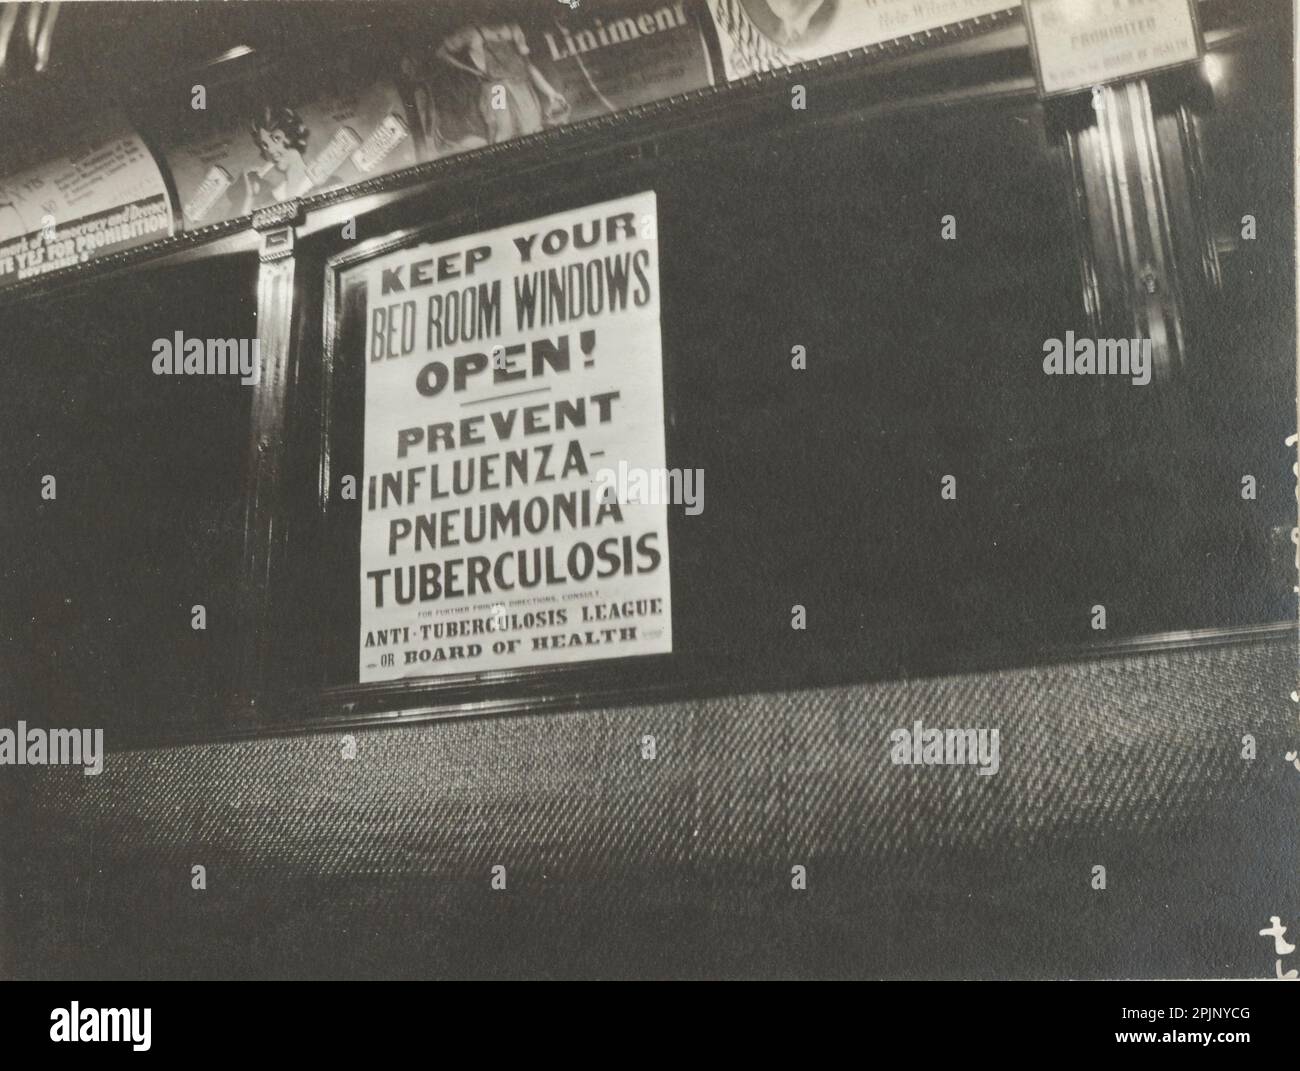 Les fenêtres des wagons à chariot ont été affichées avec des panneaux avertissant les gens de garder les fenêtres des chambres ouvertes pour prévenir la propagation de la grippe, de la tuberculose et de la pneumonie, Cincinnati, OH, 11/8/1918. (NARA) Banque D'Images